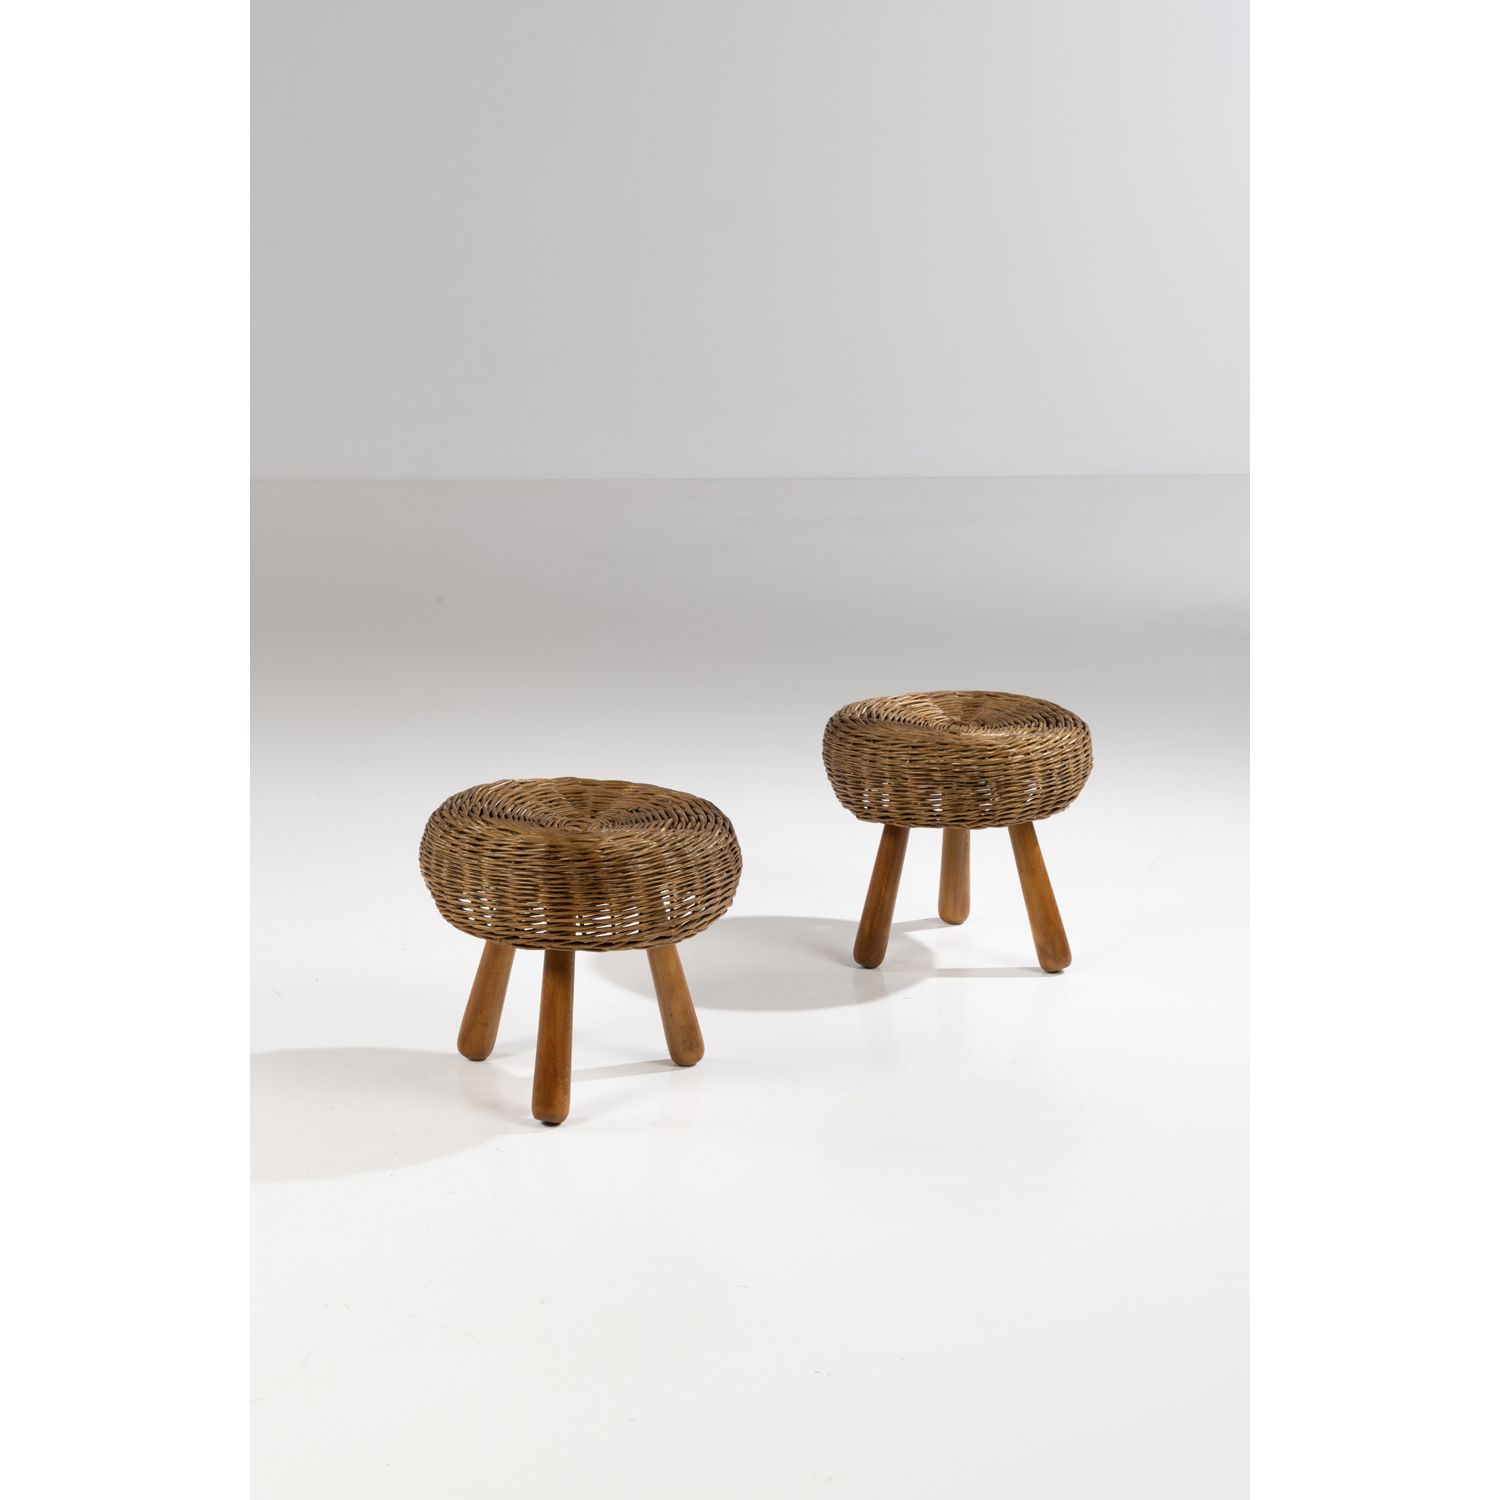 Null 托尼-保罗（1918-2010）

一对凳子

胡桃木和藤条

创建于1950年代的模型

高30.5 × 直径34.5厘米